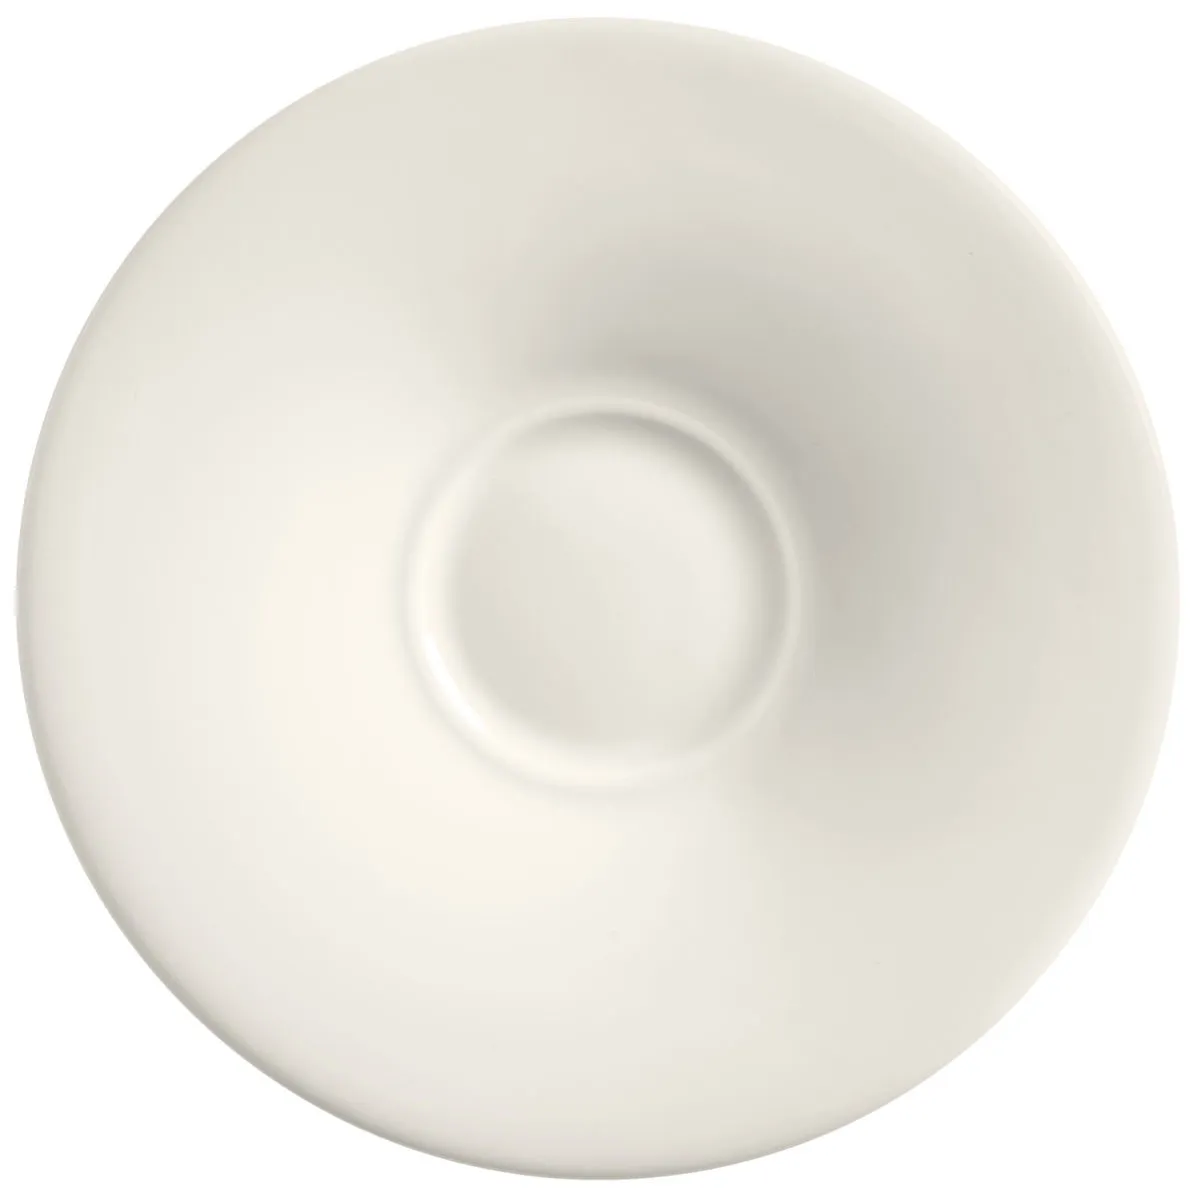 Piattino espresso Premiora VEGA; 12.5 cm (Ø); bianco crema; rotonda; 12 pz. / confezione